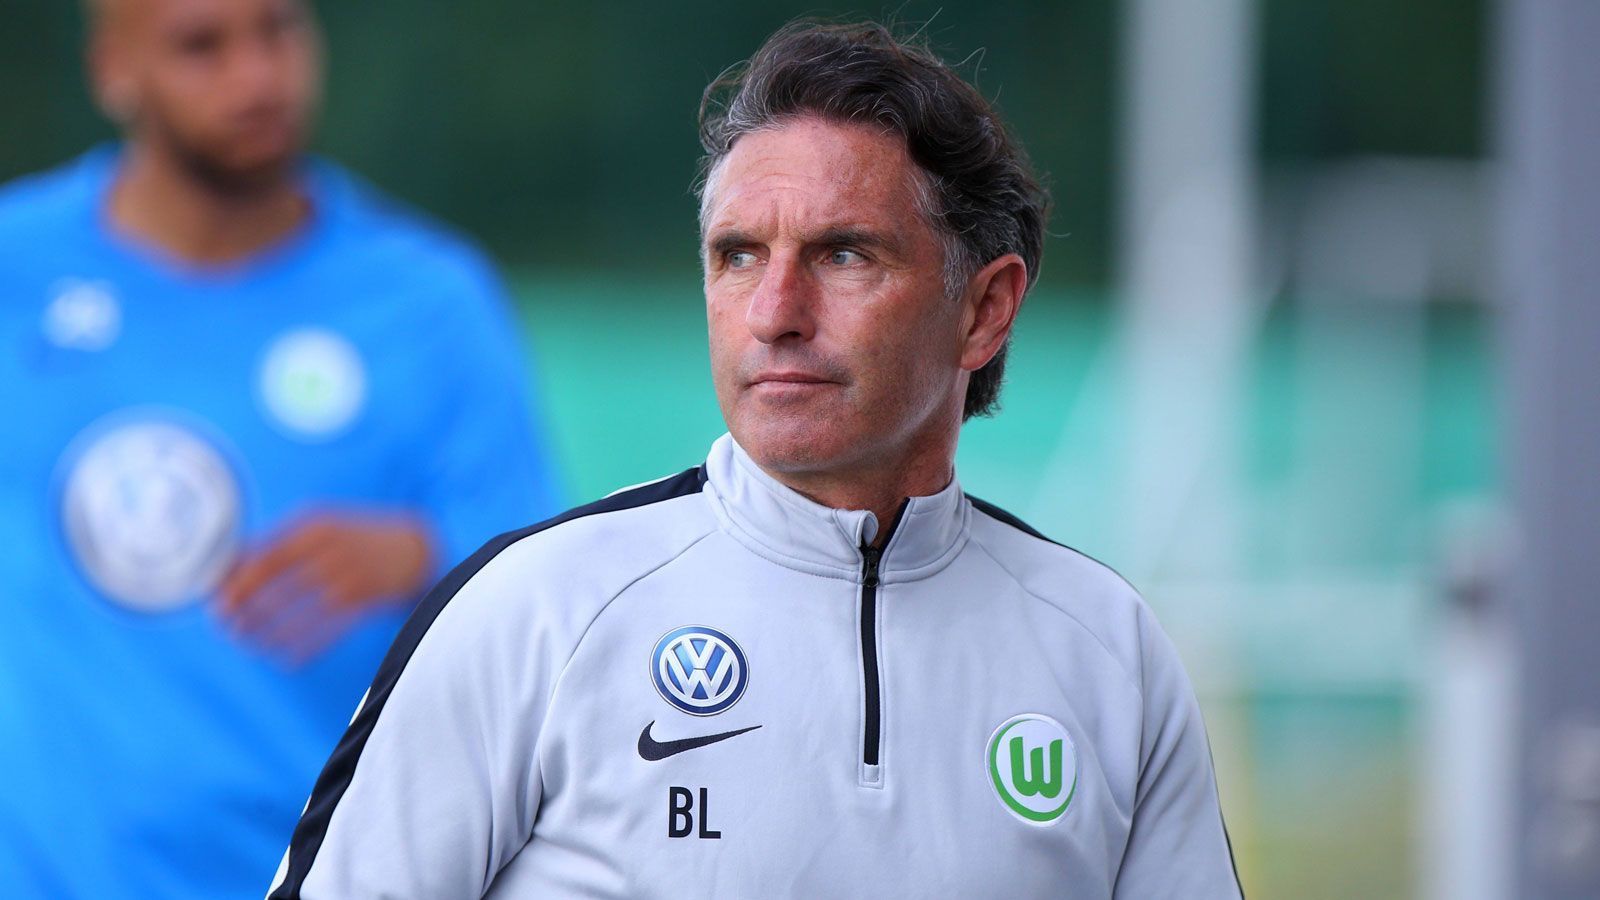 
                <strong>VfL Wolfsburg - Bruno Labbadia</strong><br>
                Im Amt seit: 20.02.2018Vertrag bis: 30.06.2019 (verlässt den Verein zum Saisonende)
              